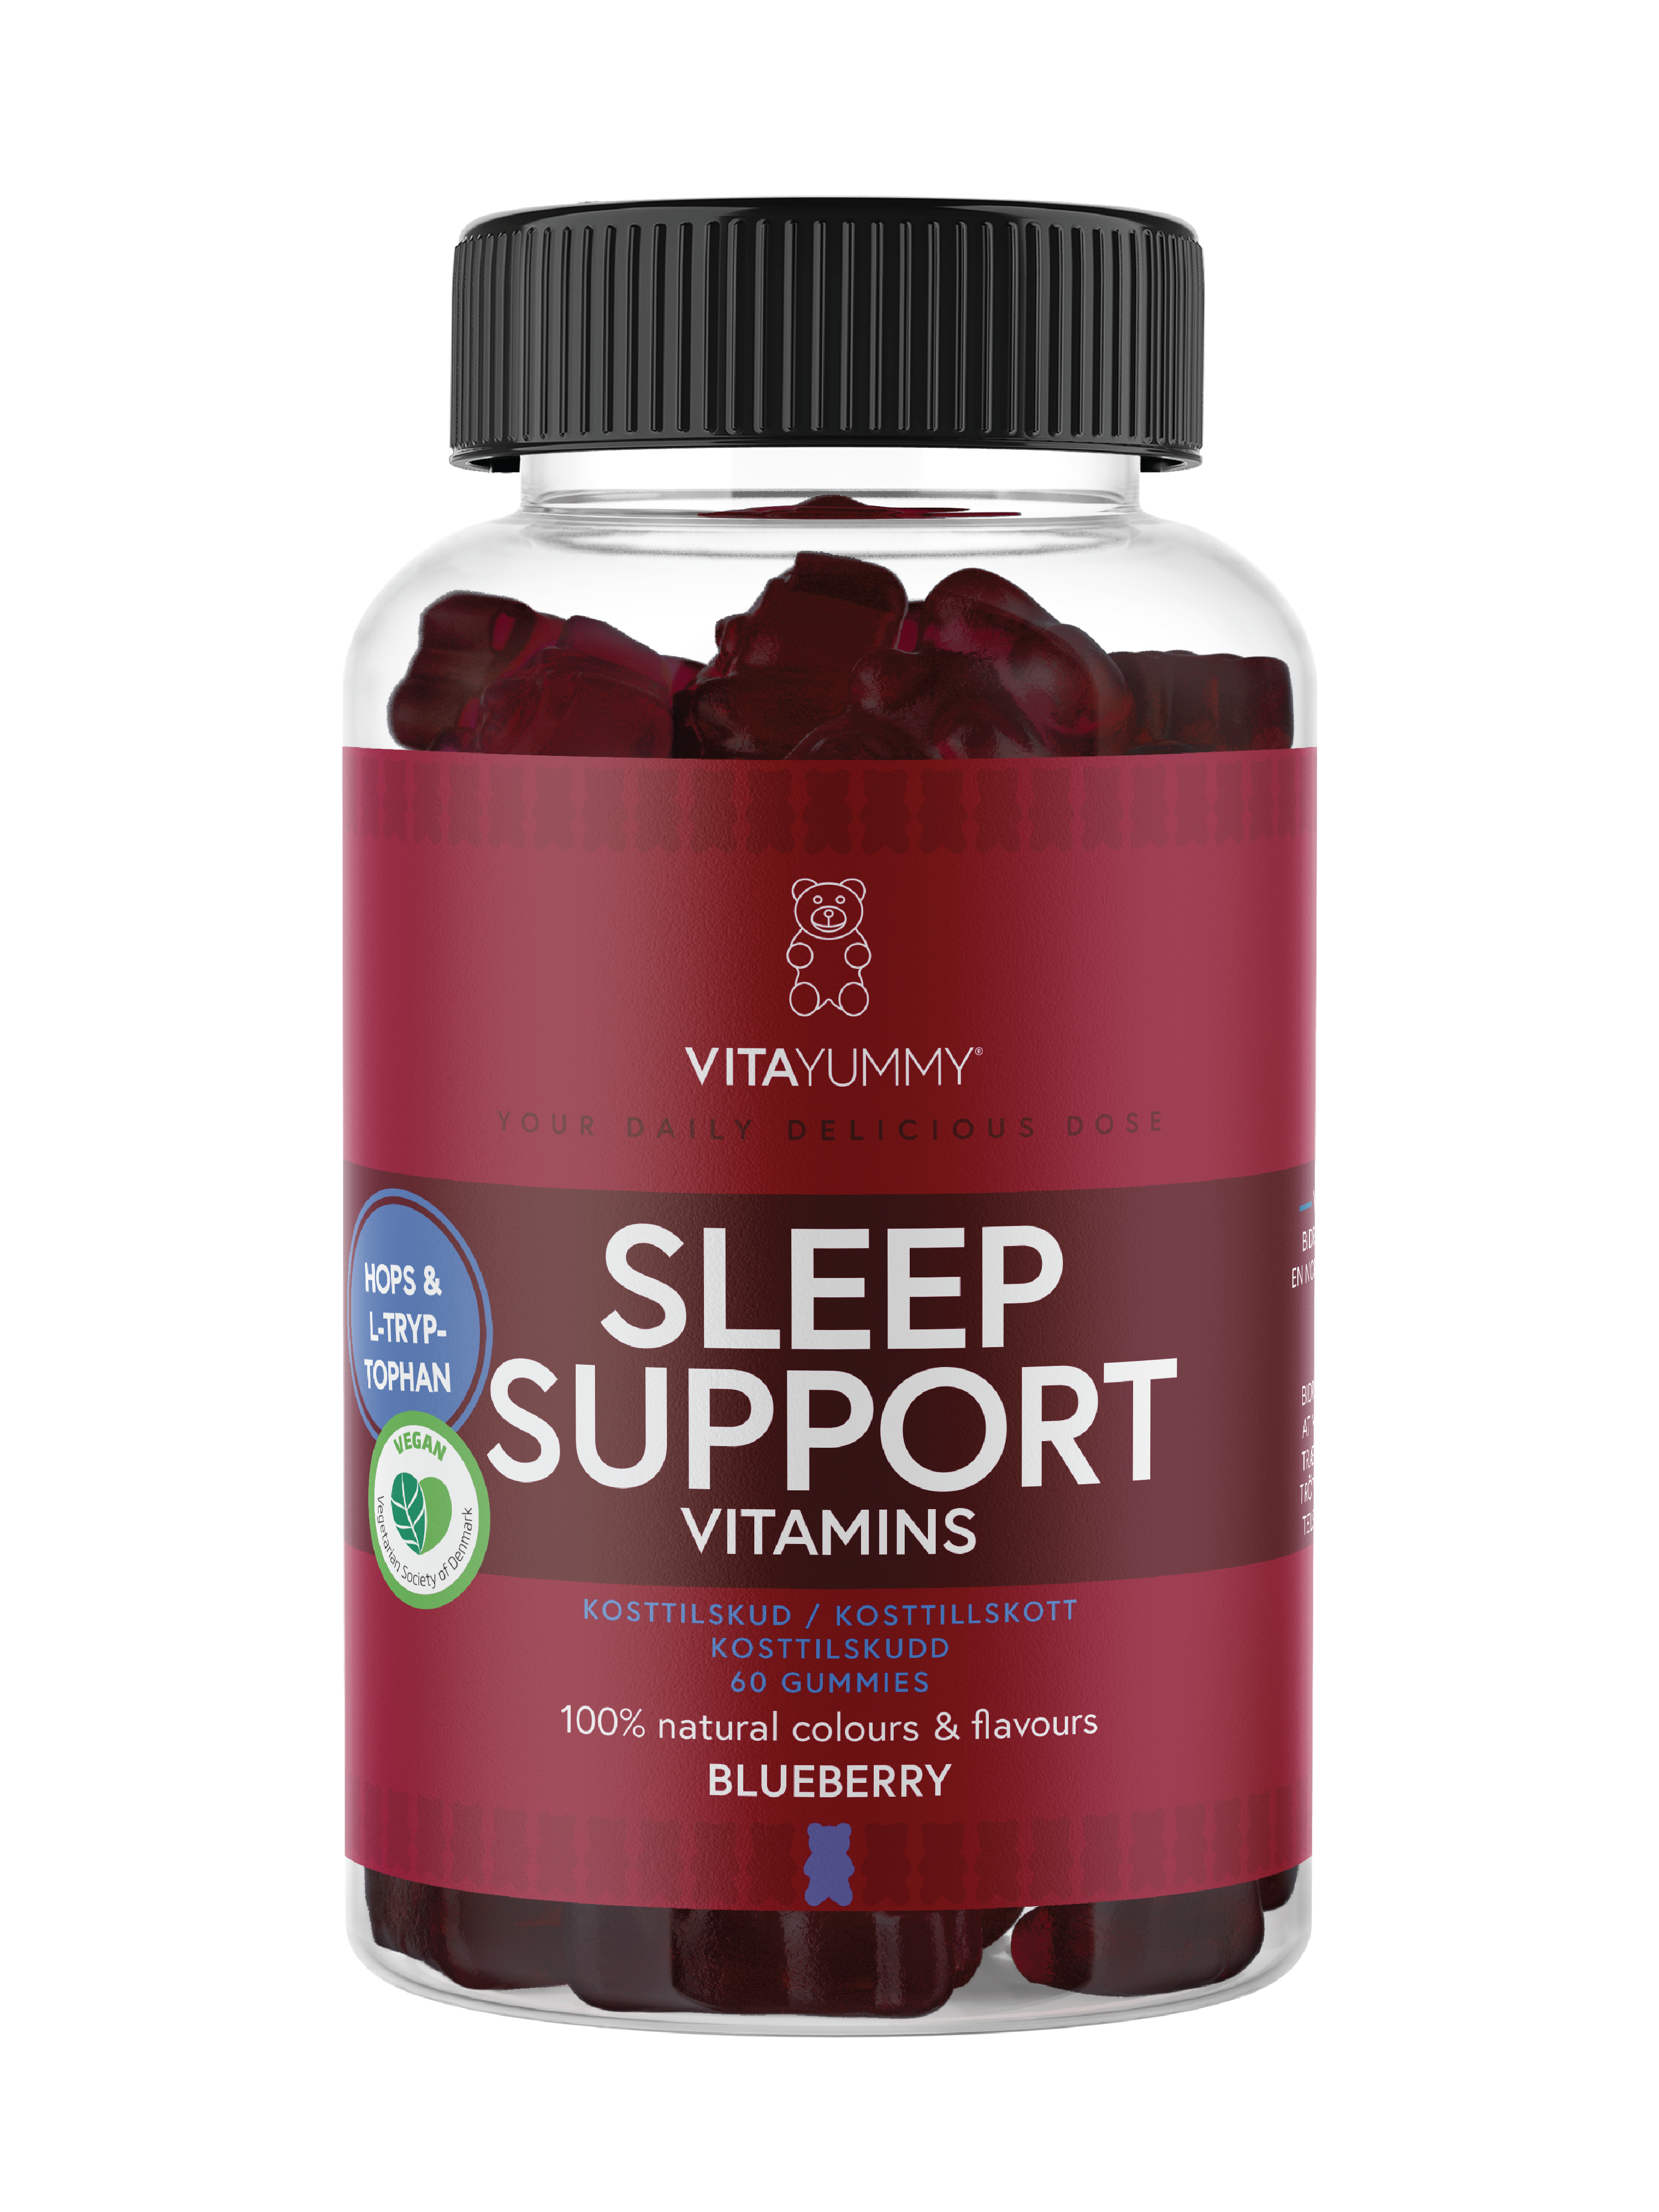 VitaYummy Sleep Support Vitamins, Blåbær, 60 stk.